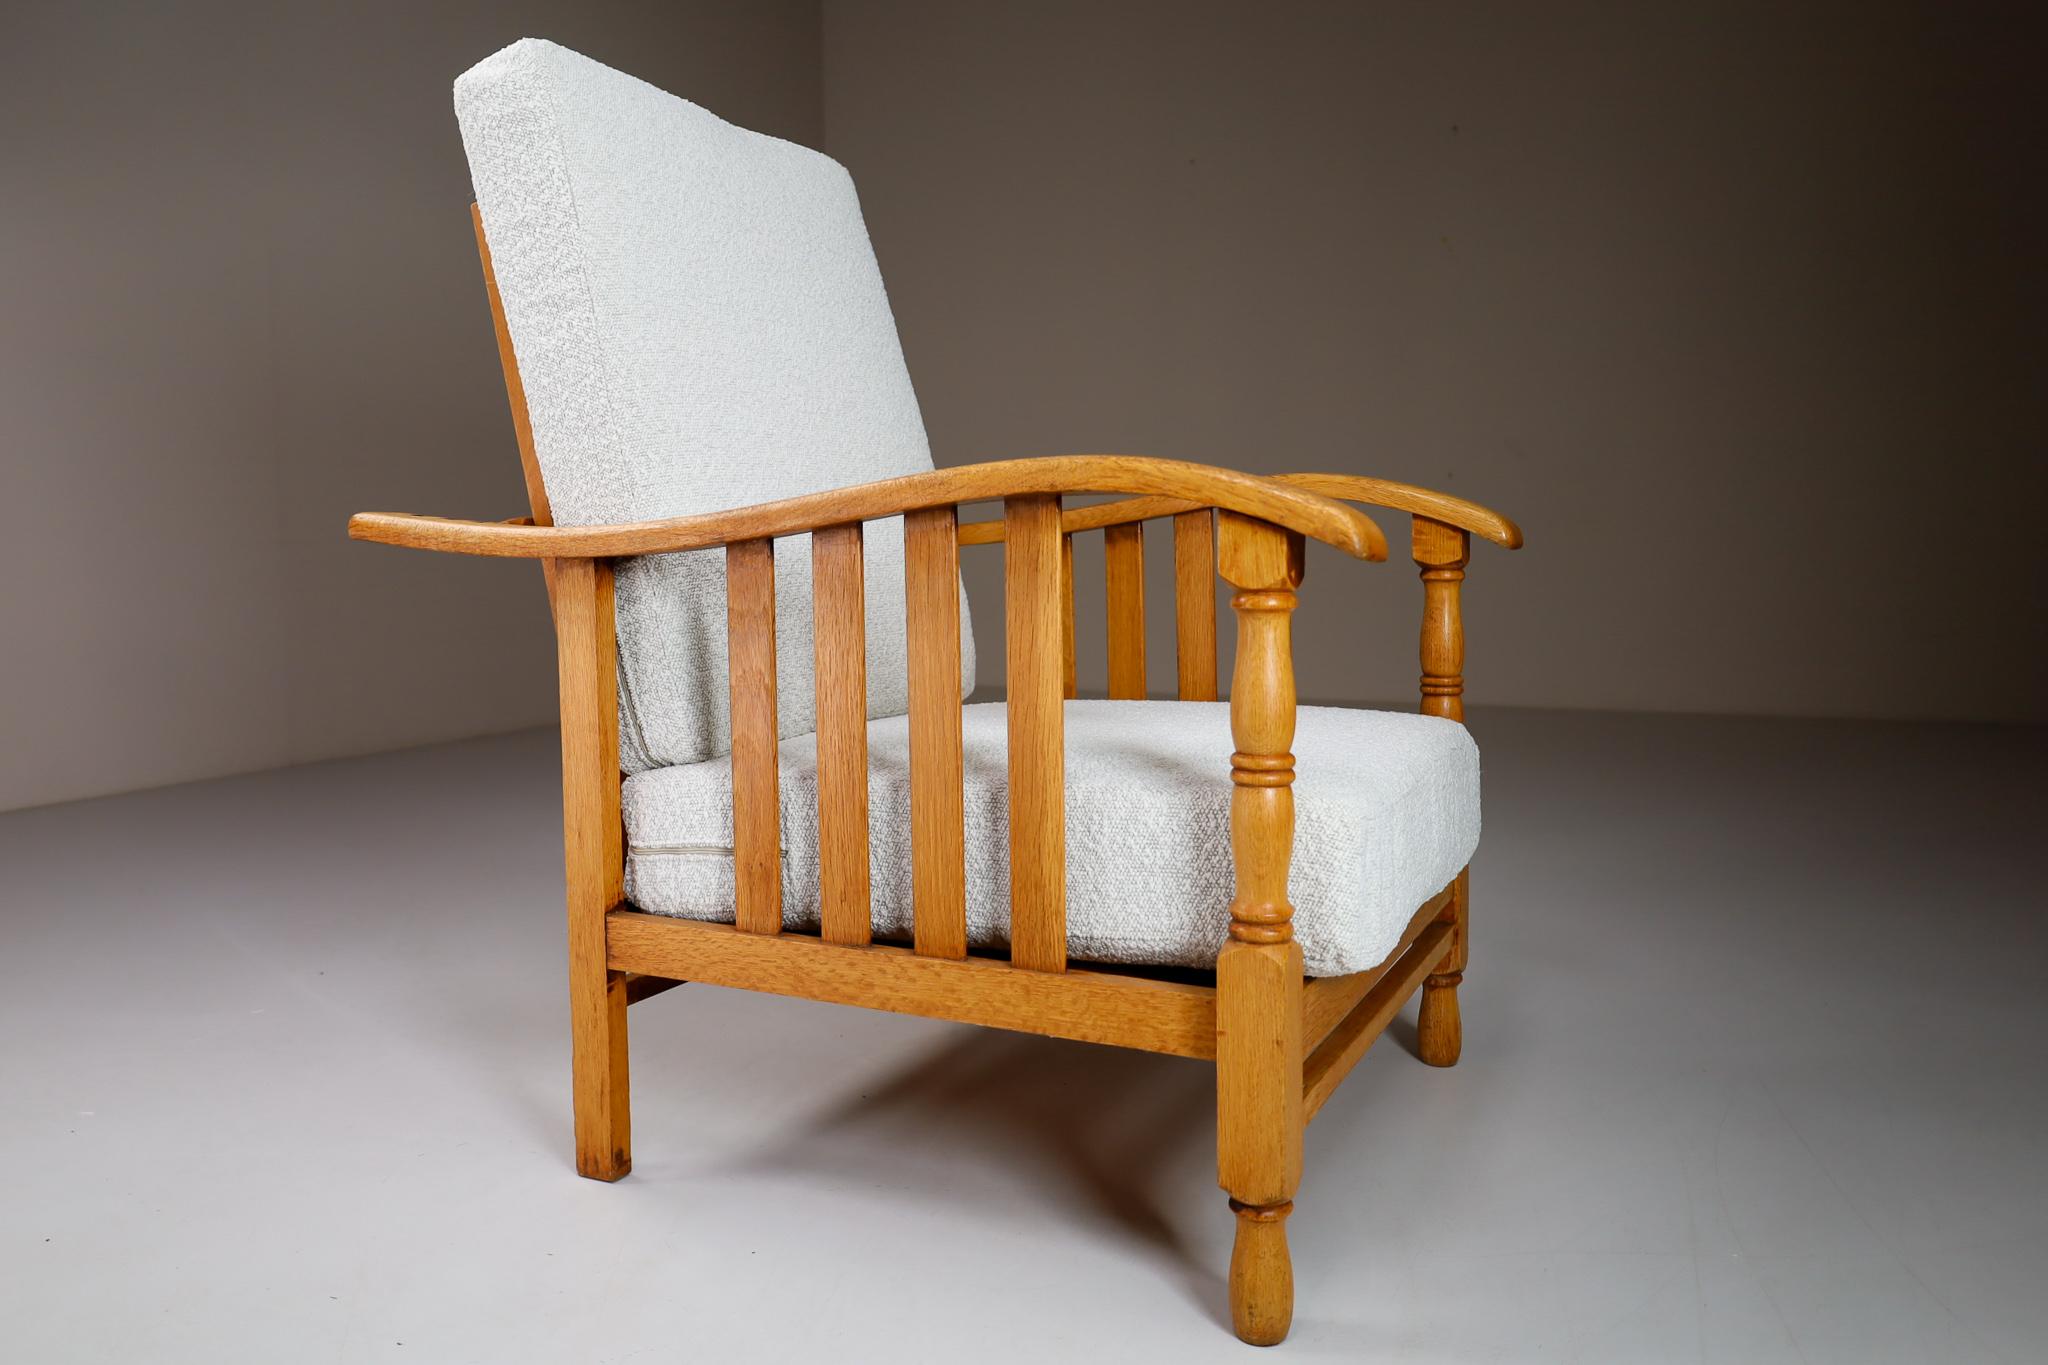 Fauteuil ou chaise longue du milieu du siècle fabriqué et conçu en France dans les années 1950. Fabriqué en bois de chêne et retapissé professionnellement en tissu bouclé. Ces fauteuils constitueraient un ajout attrayant à tout intérieur tel que le